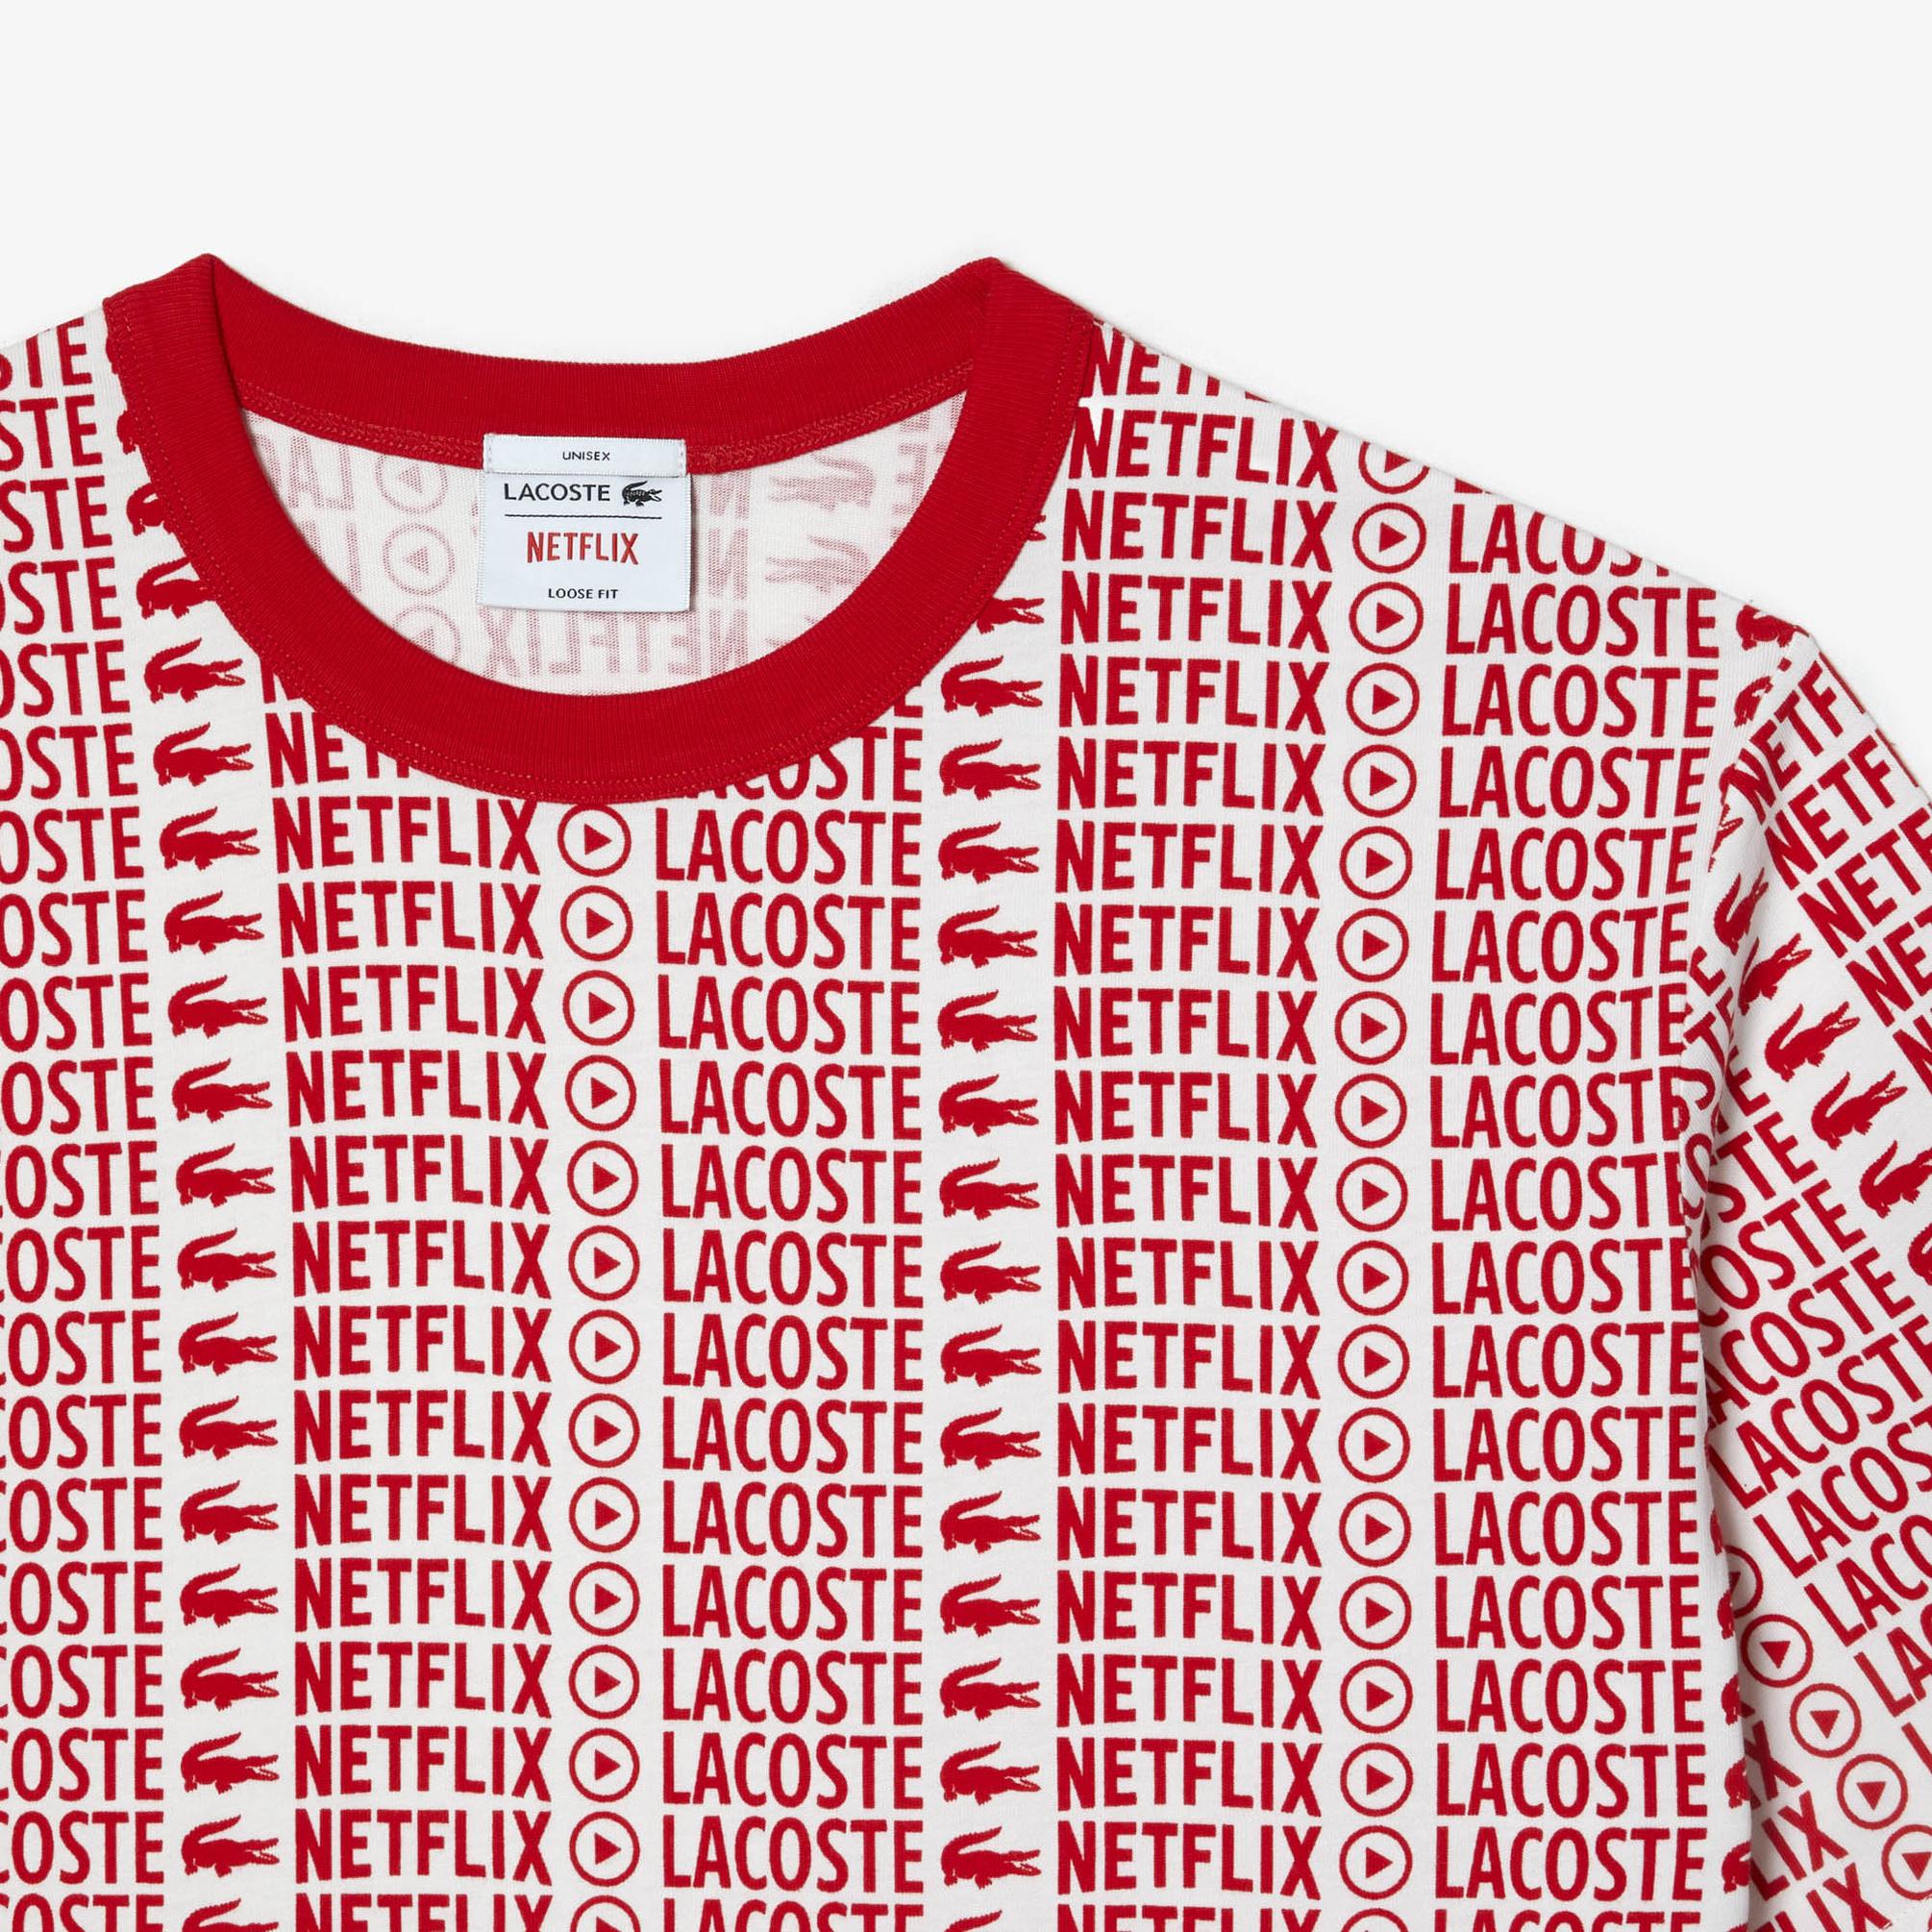  Lacoste Netflix Unisex Kırmızı T-Shirt